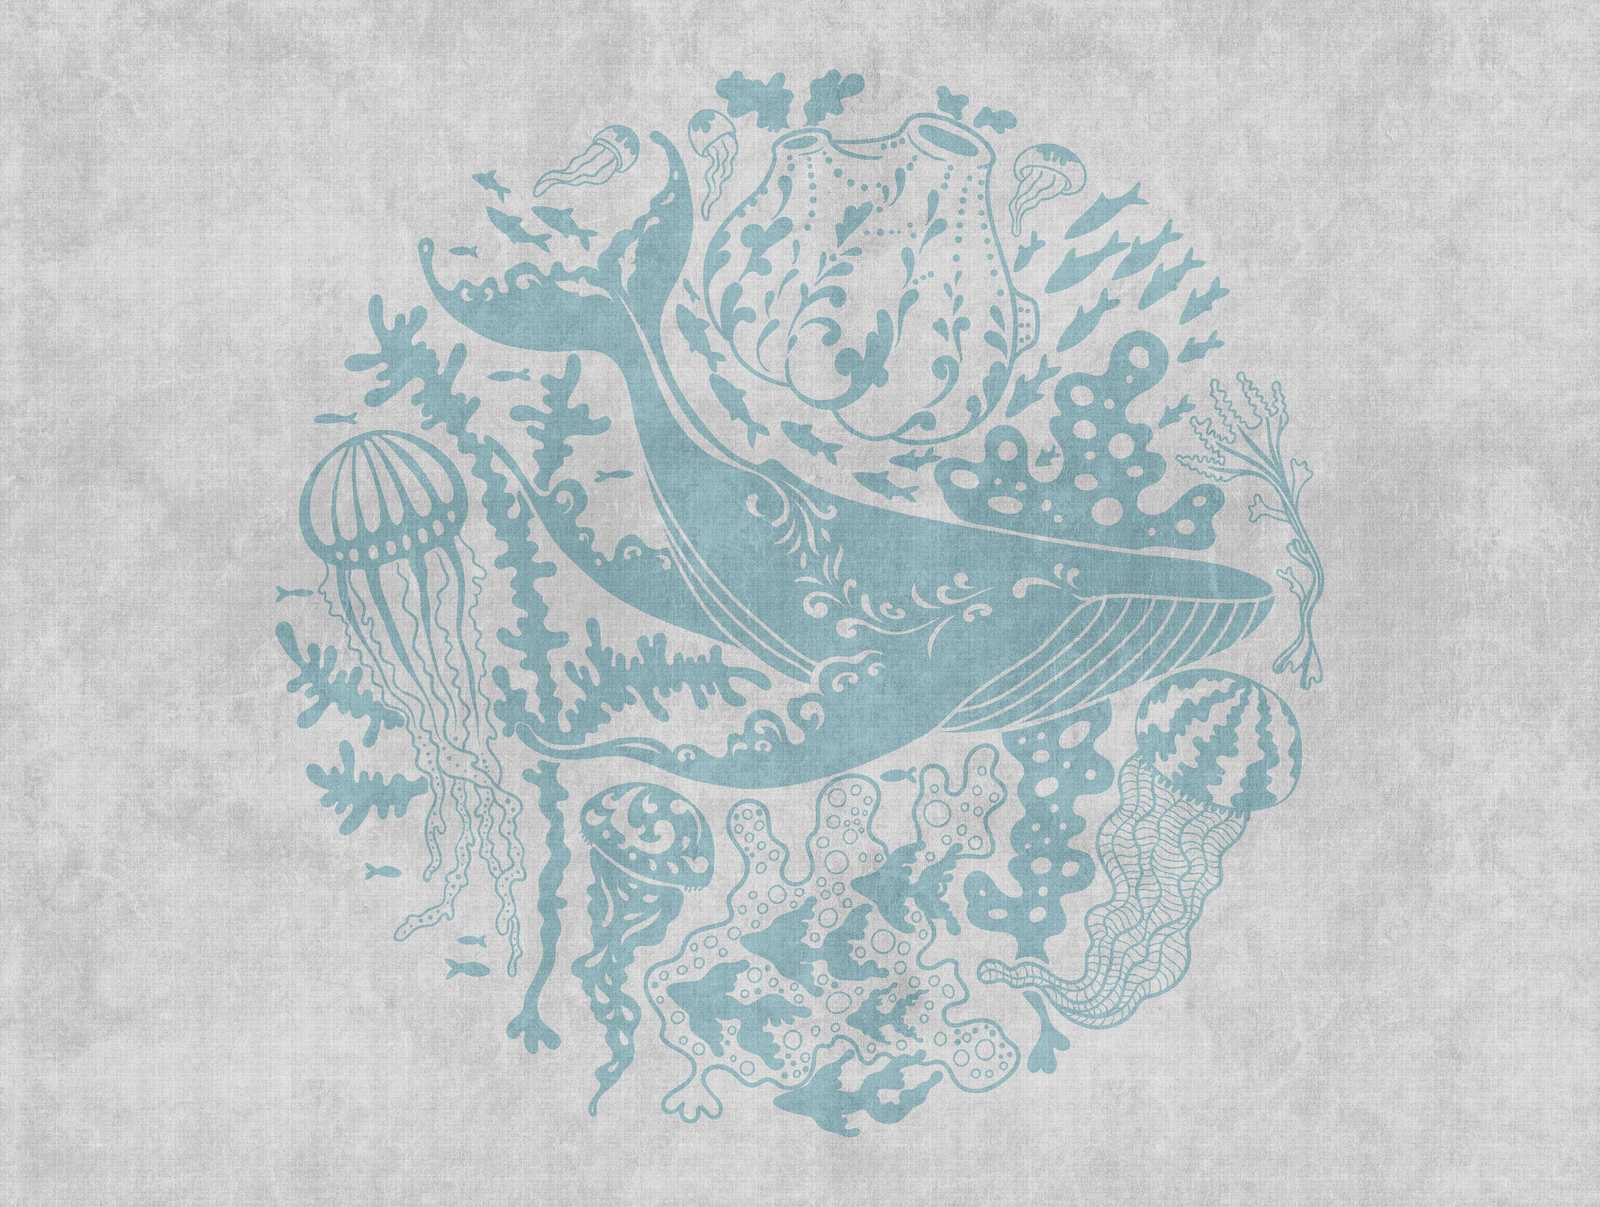             Papier peint Nouveauté | papier peint motifs baleine sous-marine, méduse & corail
        